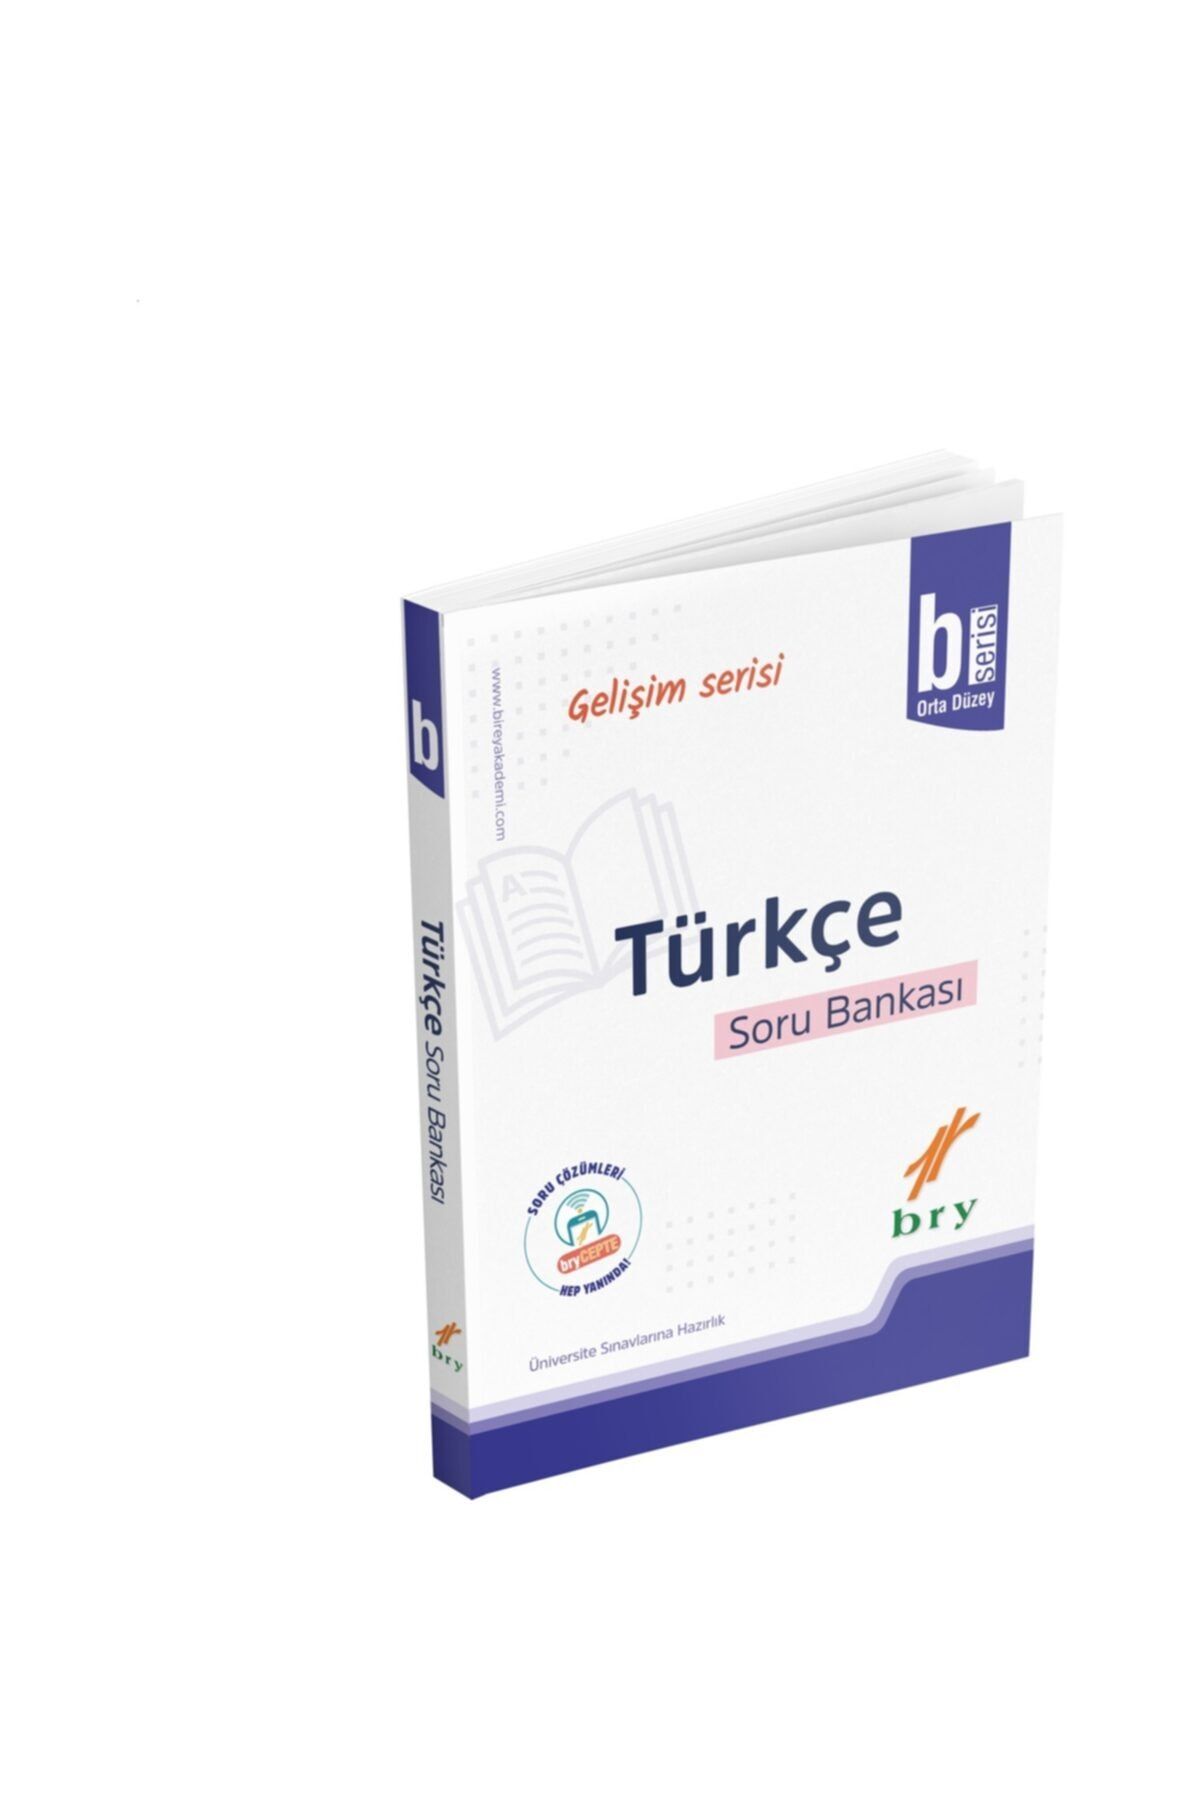 Birey Yayınları Bry (birey) Yayınları Gelişim Serisi Türkçe B Soru Bankası